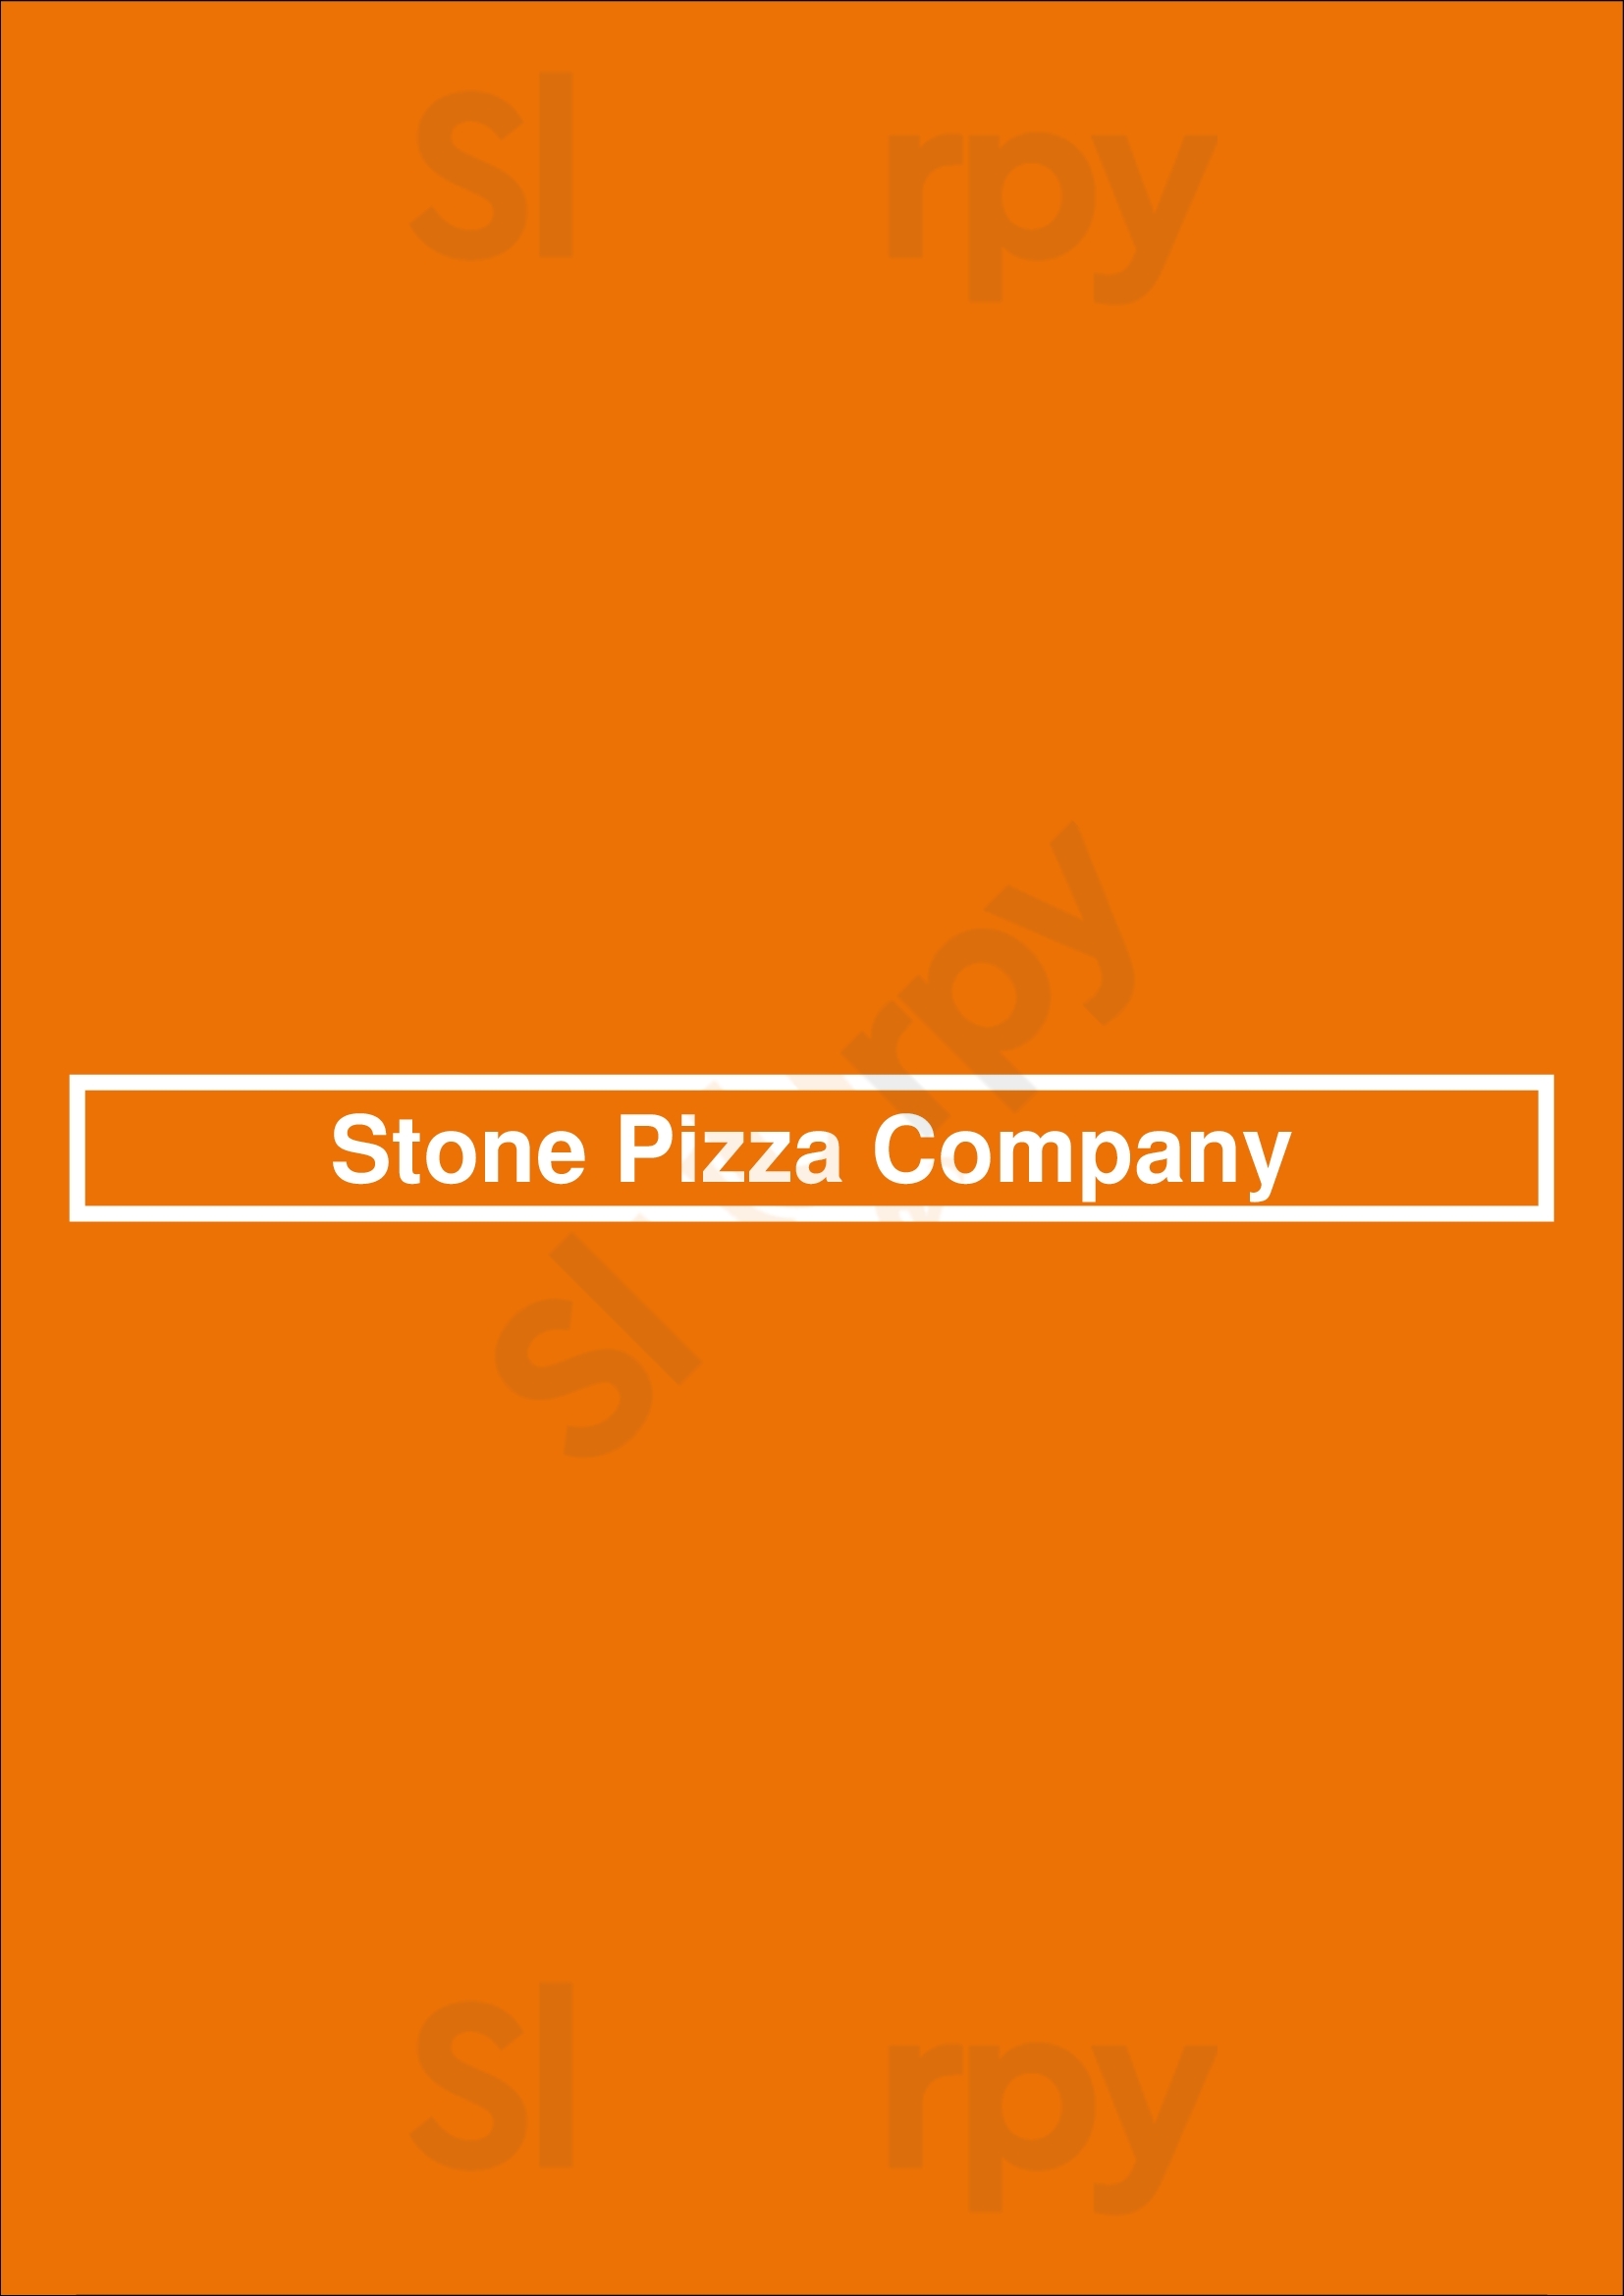 Stone Pizza Company Greenville Menu - 1